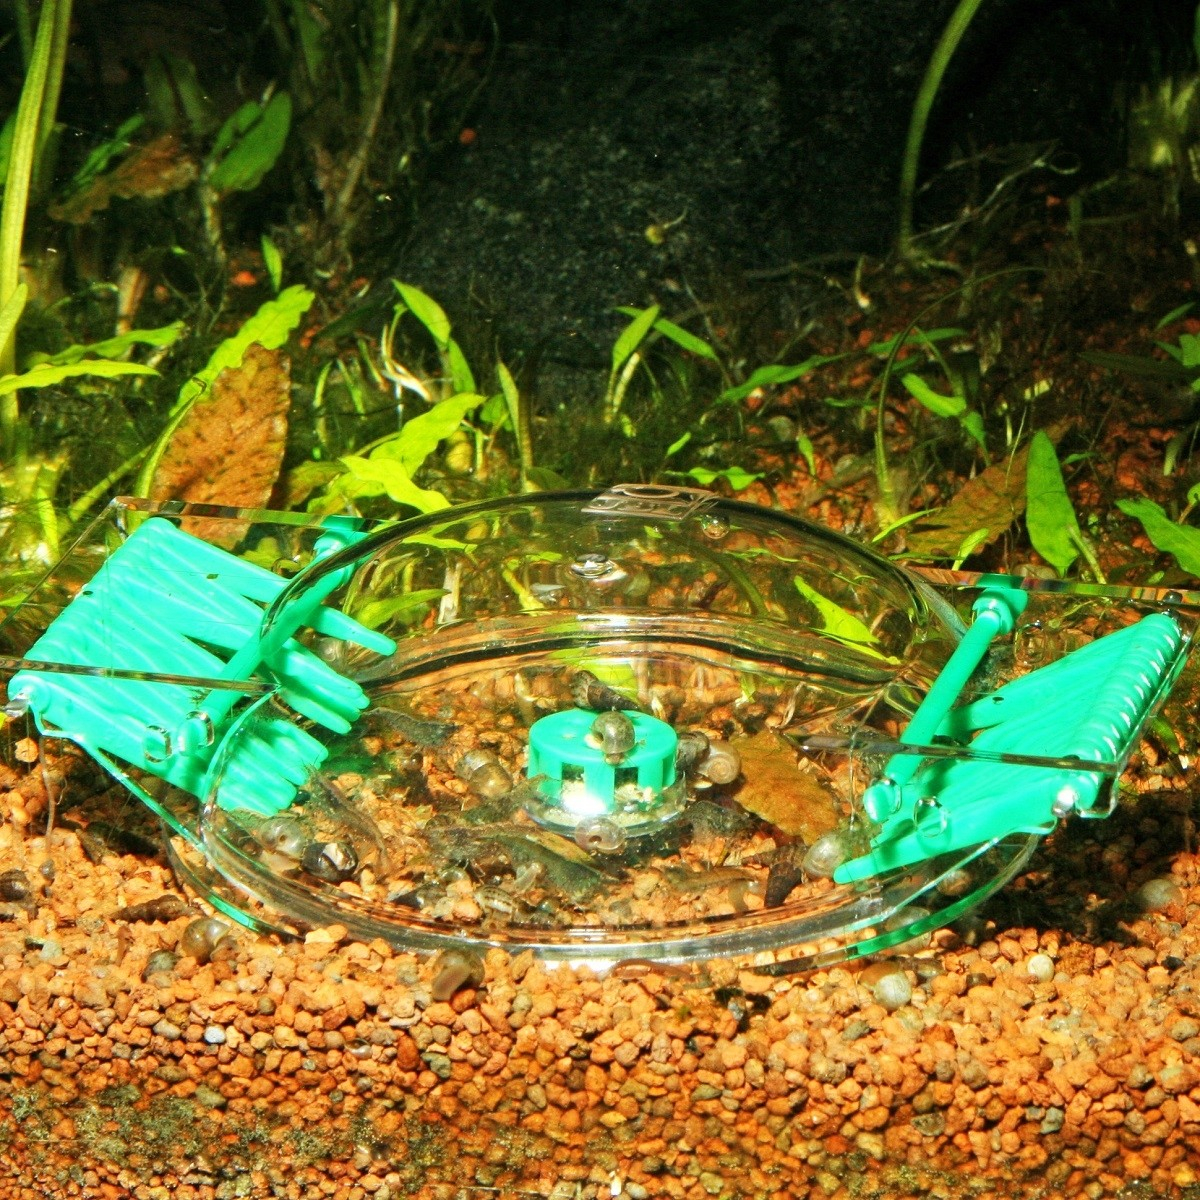 JBL LimCollect slakkenval voor zoetwateraquariums